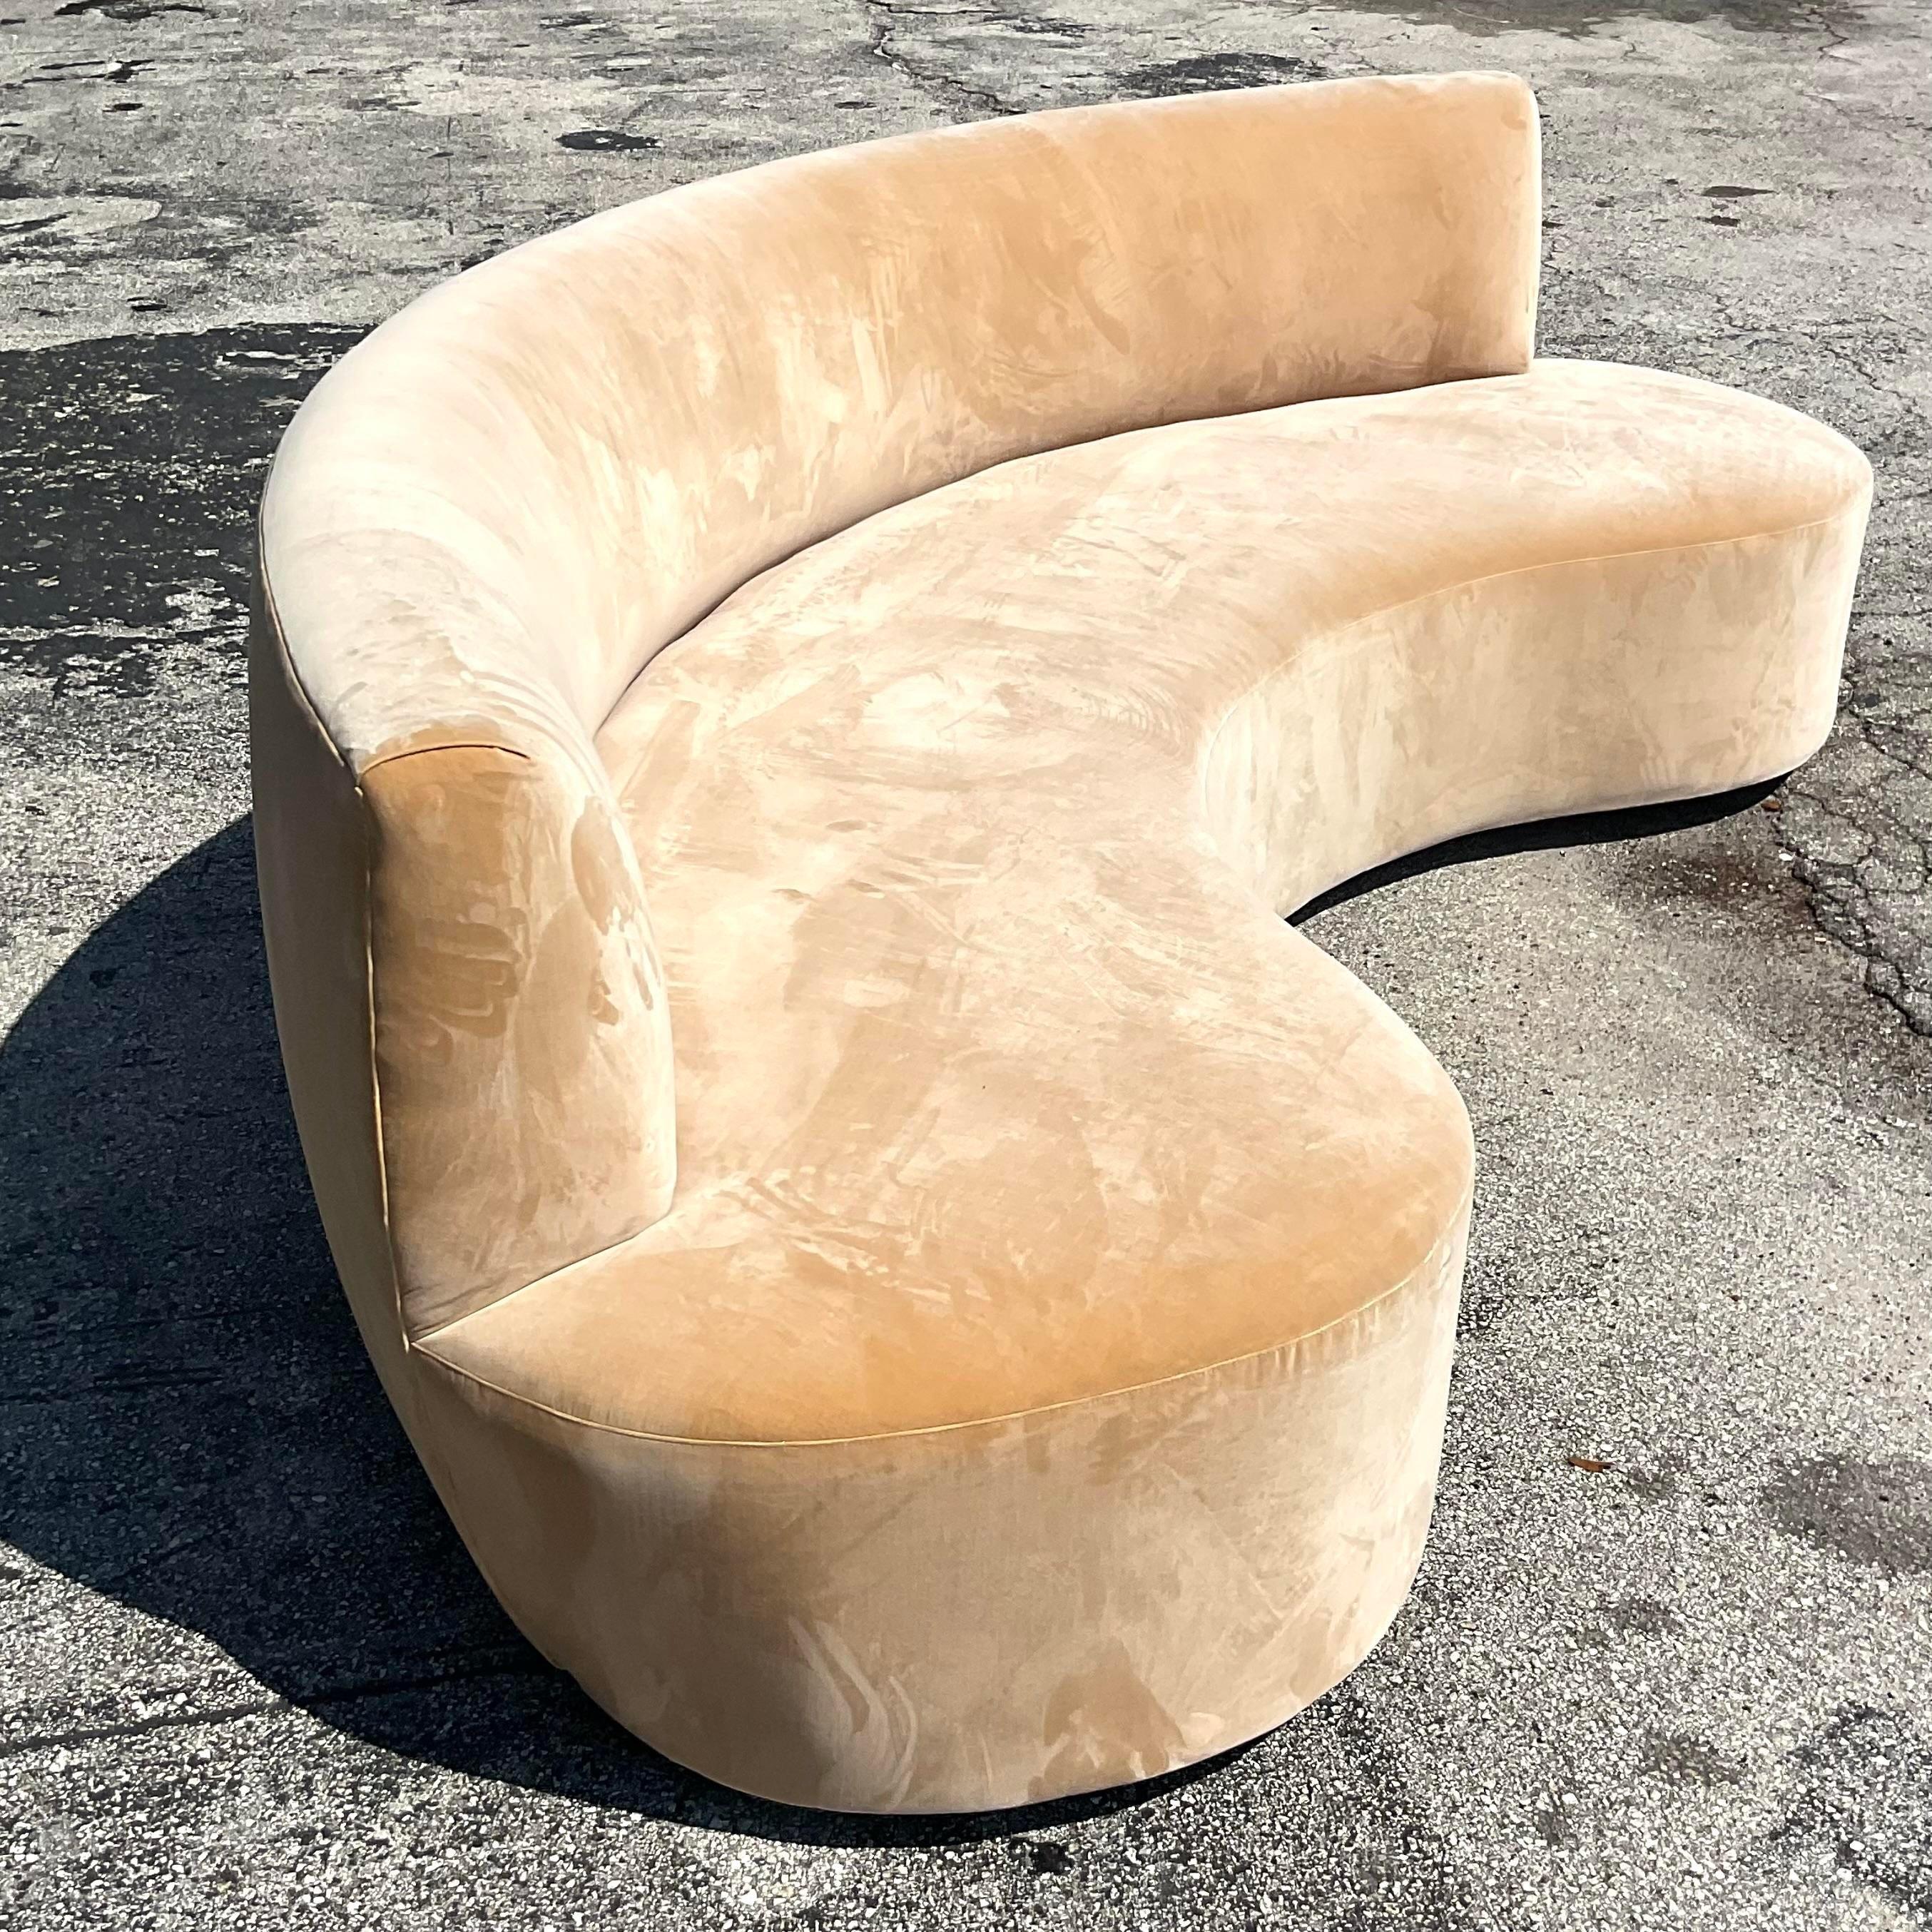 Ein sensationelles Vintage-Boho-Sofa. Eine schicke biomorphe Form in einem hellen apricotfarbenen Samt. Maßgeschneidert und in gutem Zustand. Erworben aus einem Nachlass in Palm Beach.